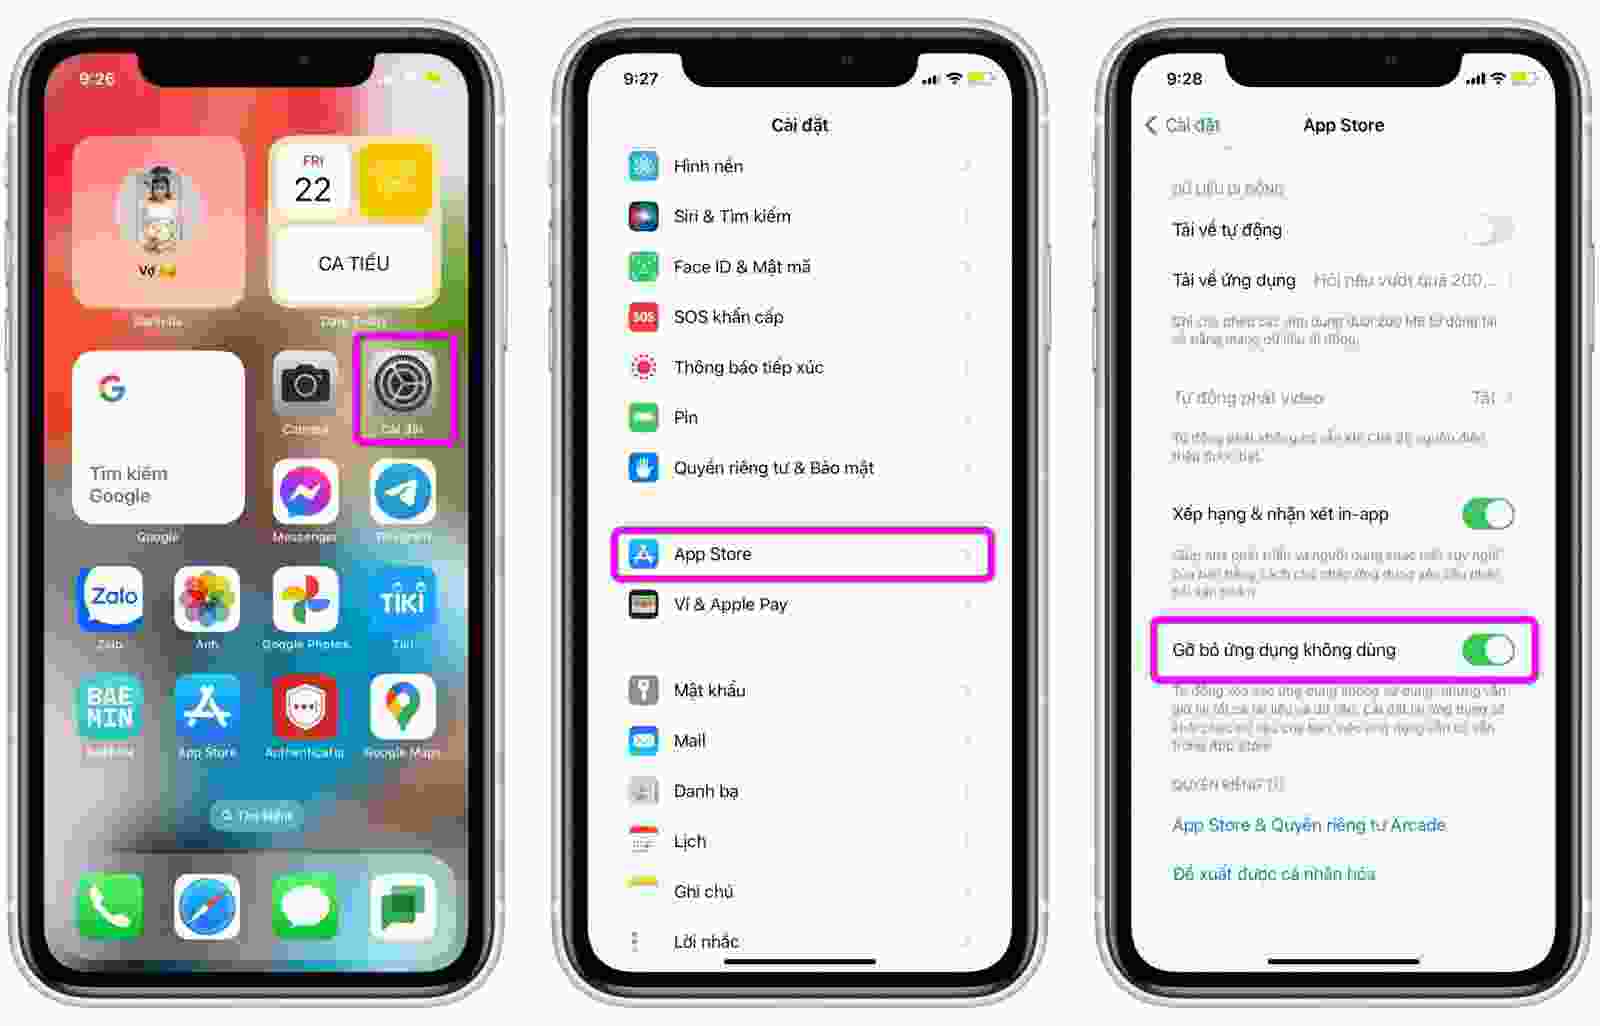 Đôi khi, việc xóa ứng dụng iPhone để giải phóng bộ nhớ là điều cần thiết. Với sự hỗ trợ của Apple VN, bạn sẽ dễ dàng xóa bỏ những ứng dụng không còn cần thiết một cách nhanh chóng và dễ dàng. Hãy cùng khám phá ngay để tăng hiệu suất sử dụng iPhone của bạn nhé!